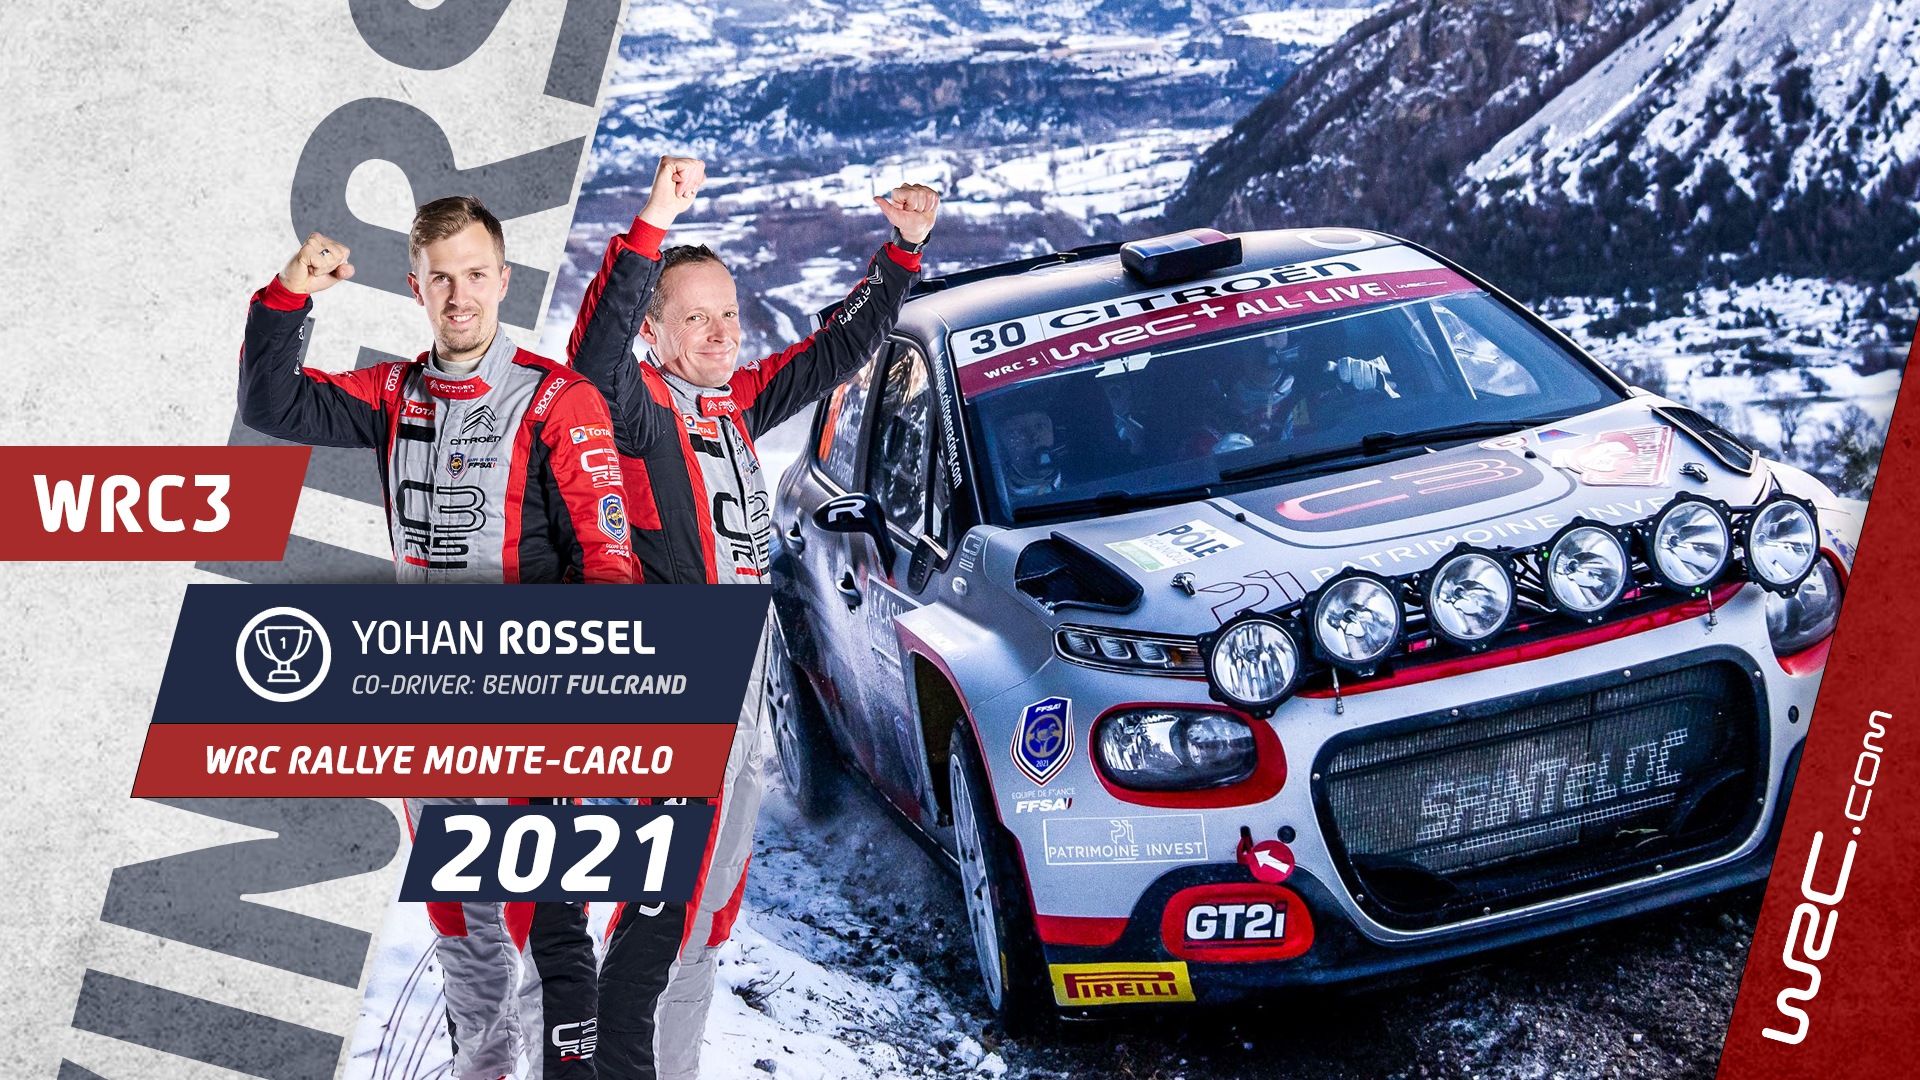 wrc - WRC: 89º Rallye Automobile de Monte-Carlo [18-24 Enero] - Página 15 230121_winner-WRC3-Rossel-16_9